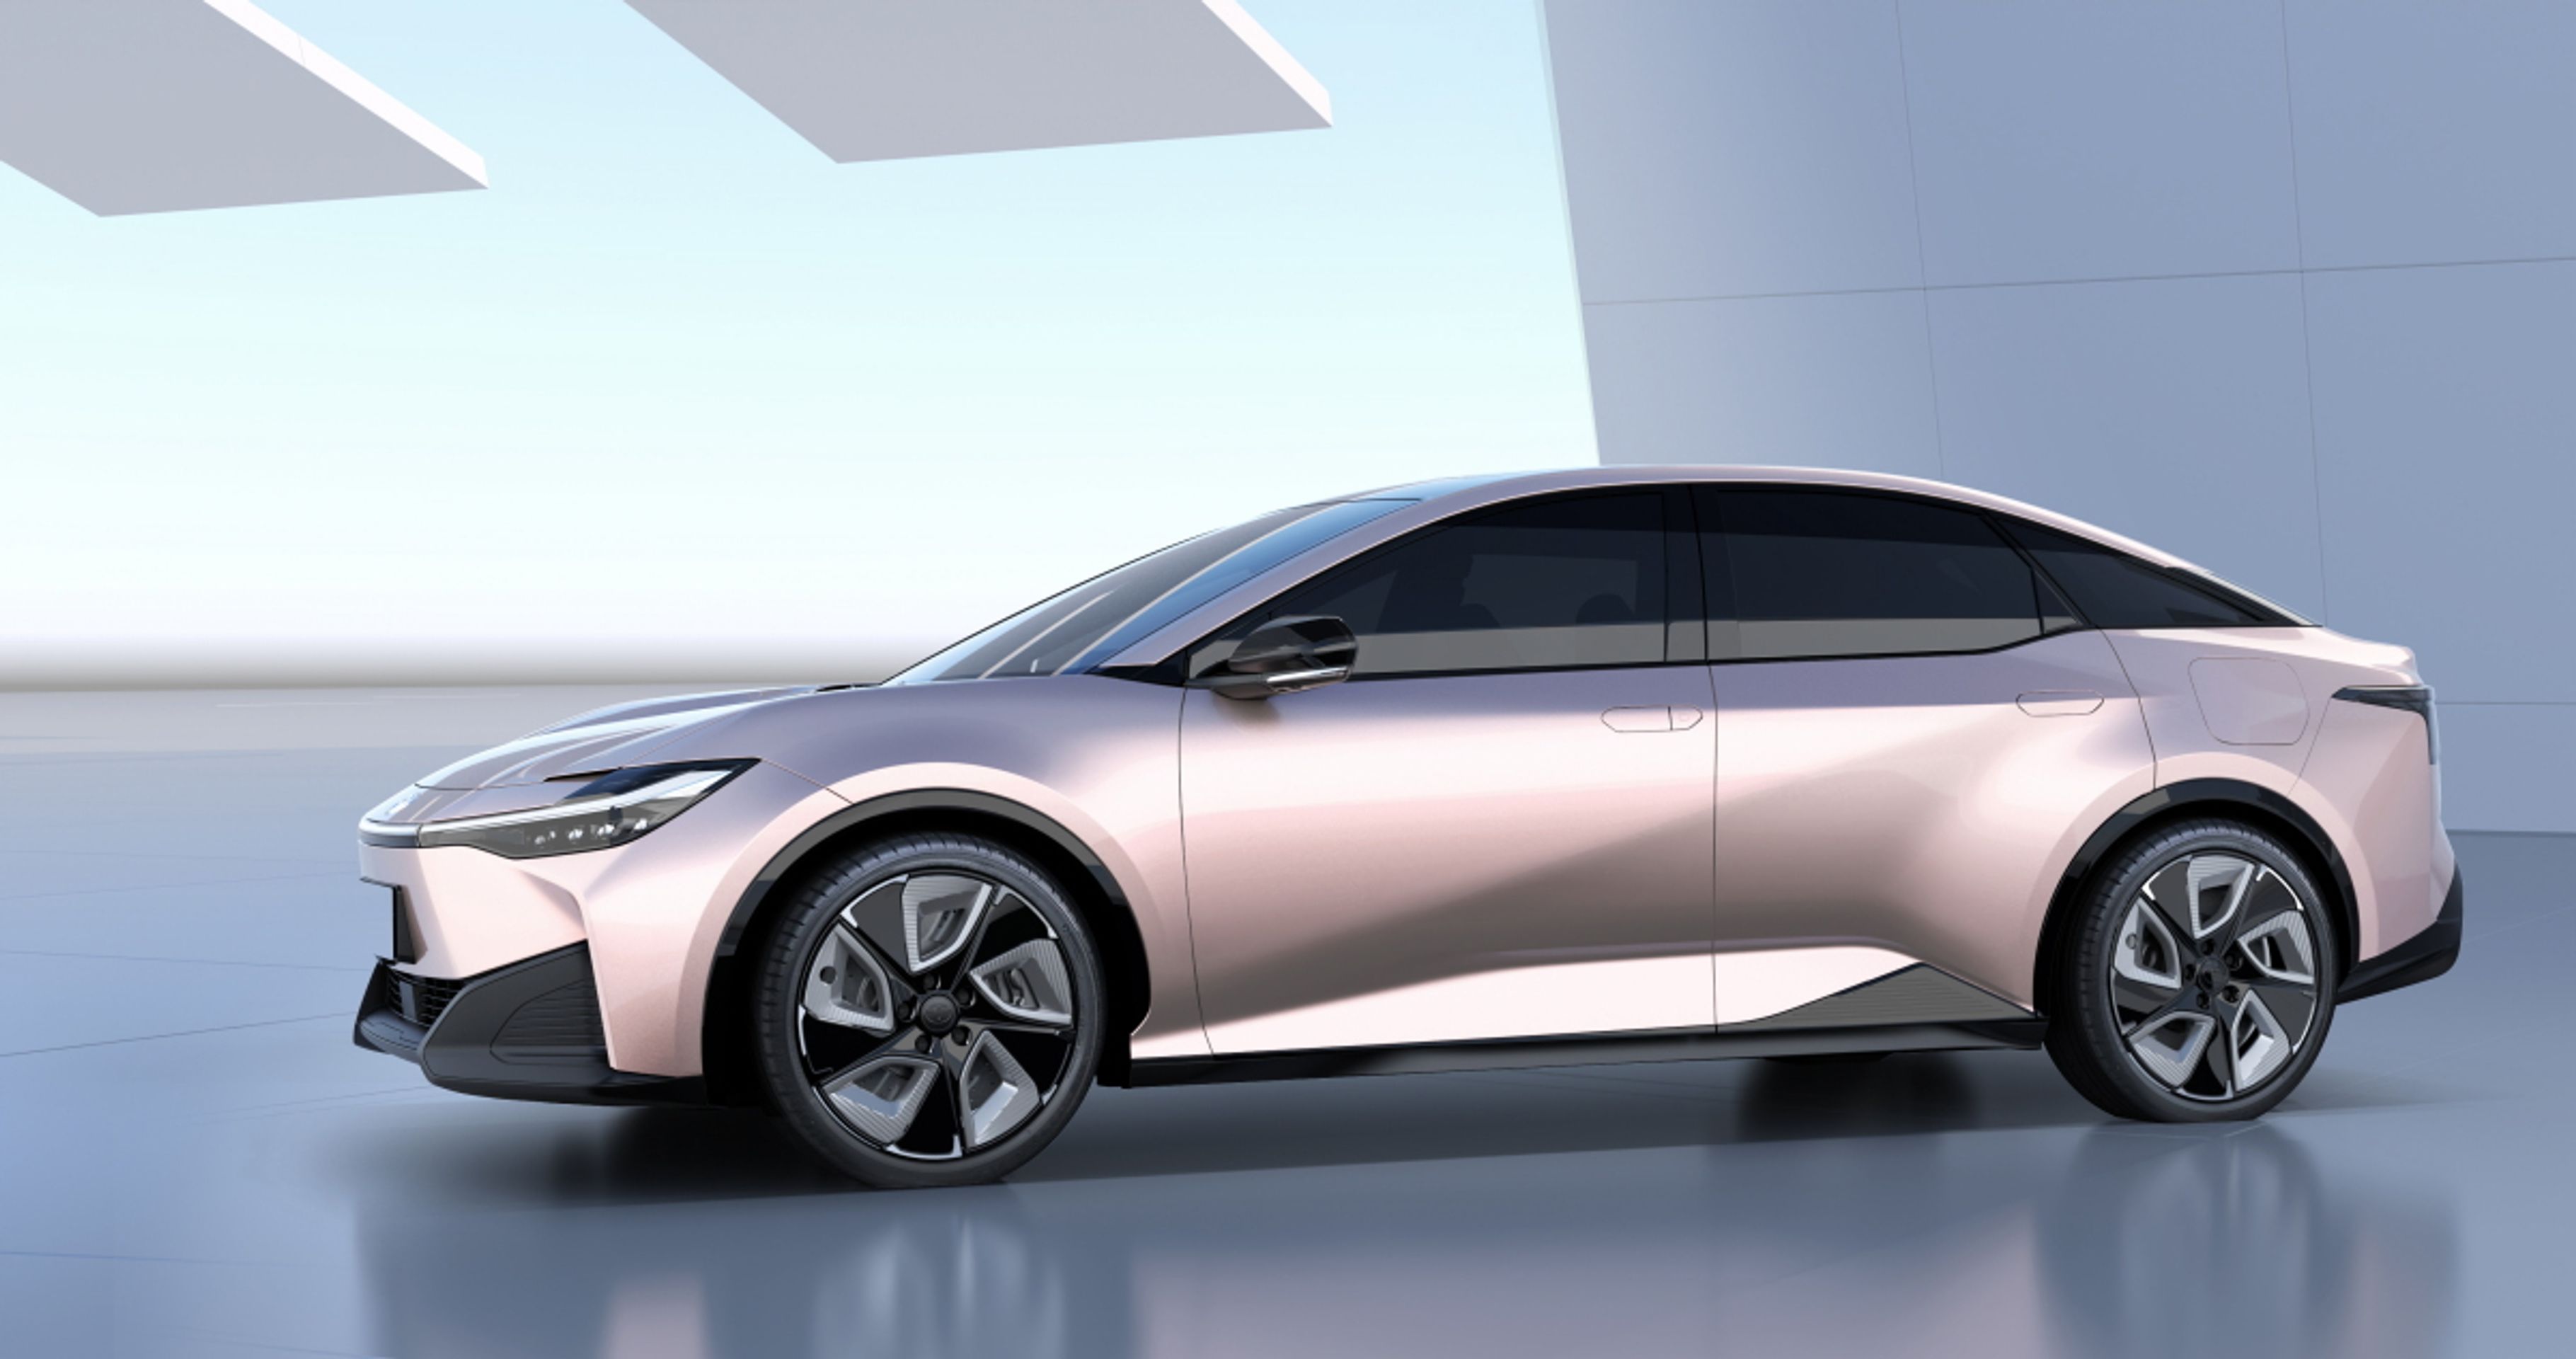 Budoucí bateriové vozy značek Toyota a Lexus - Takhle vypadá bateriová budoucnost podle značek Toyota a Lexus (9/23)